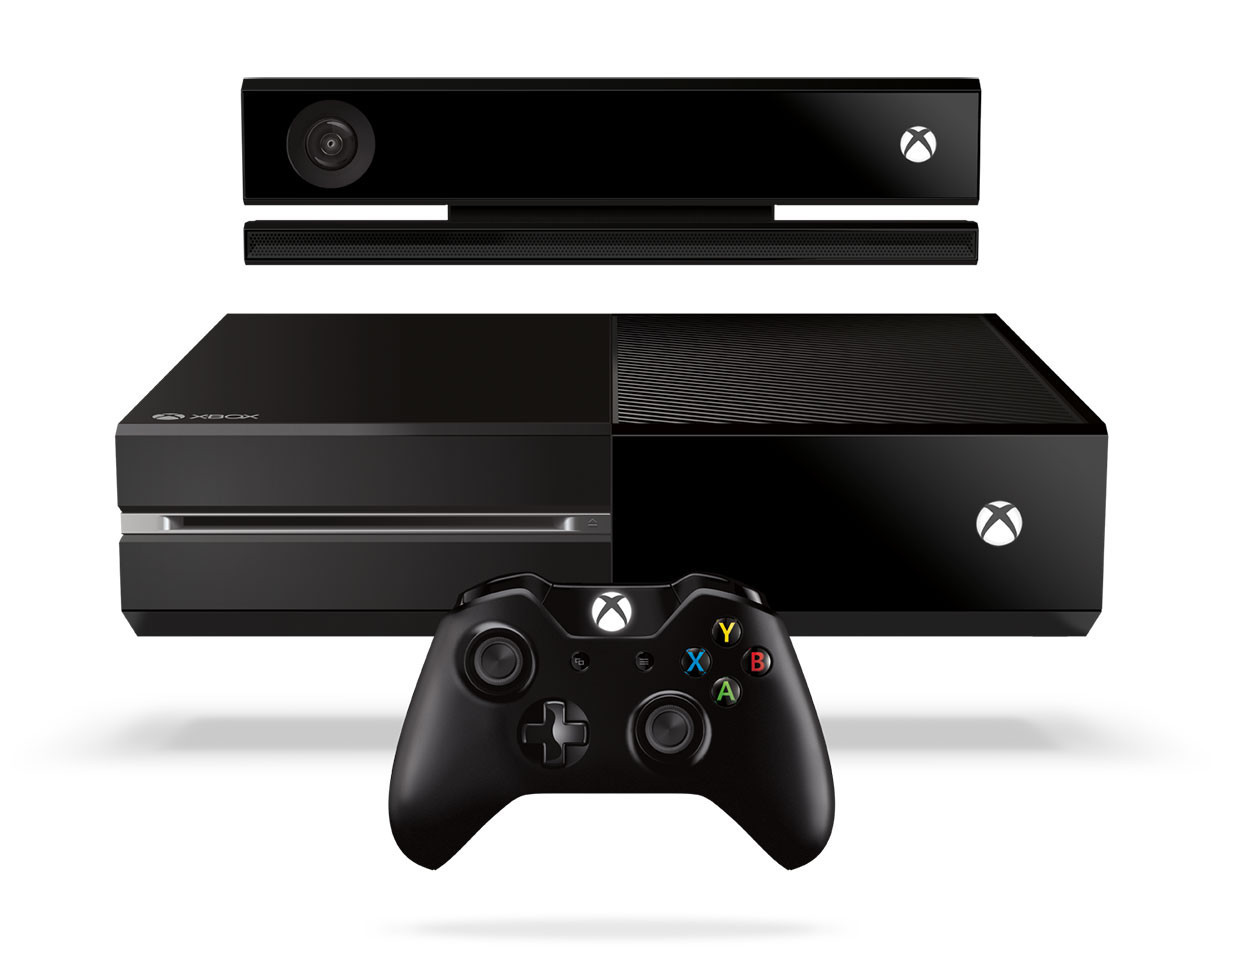 Entretiens Xbox One - KingRabbit, rédacteur chez Machinigamers